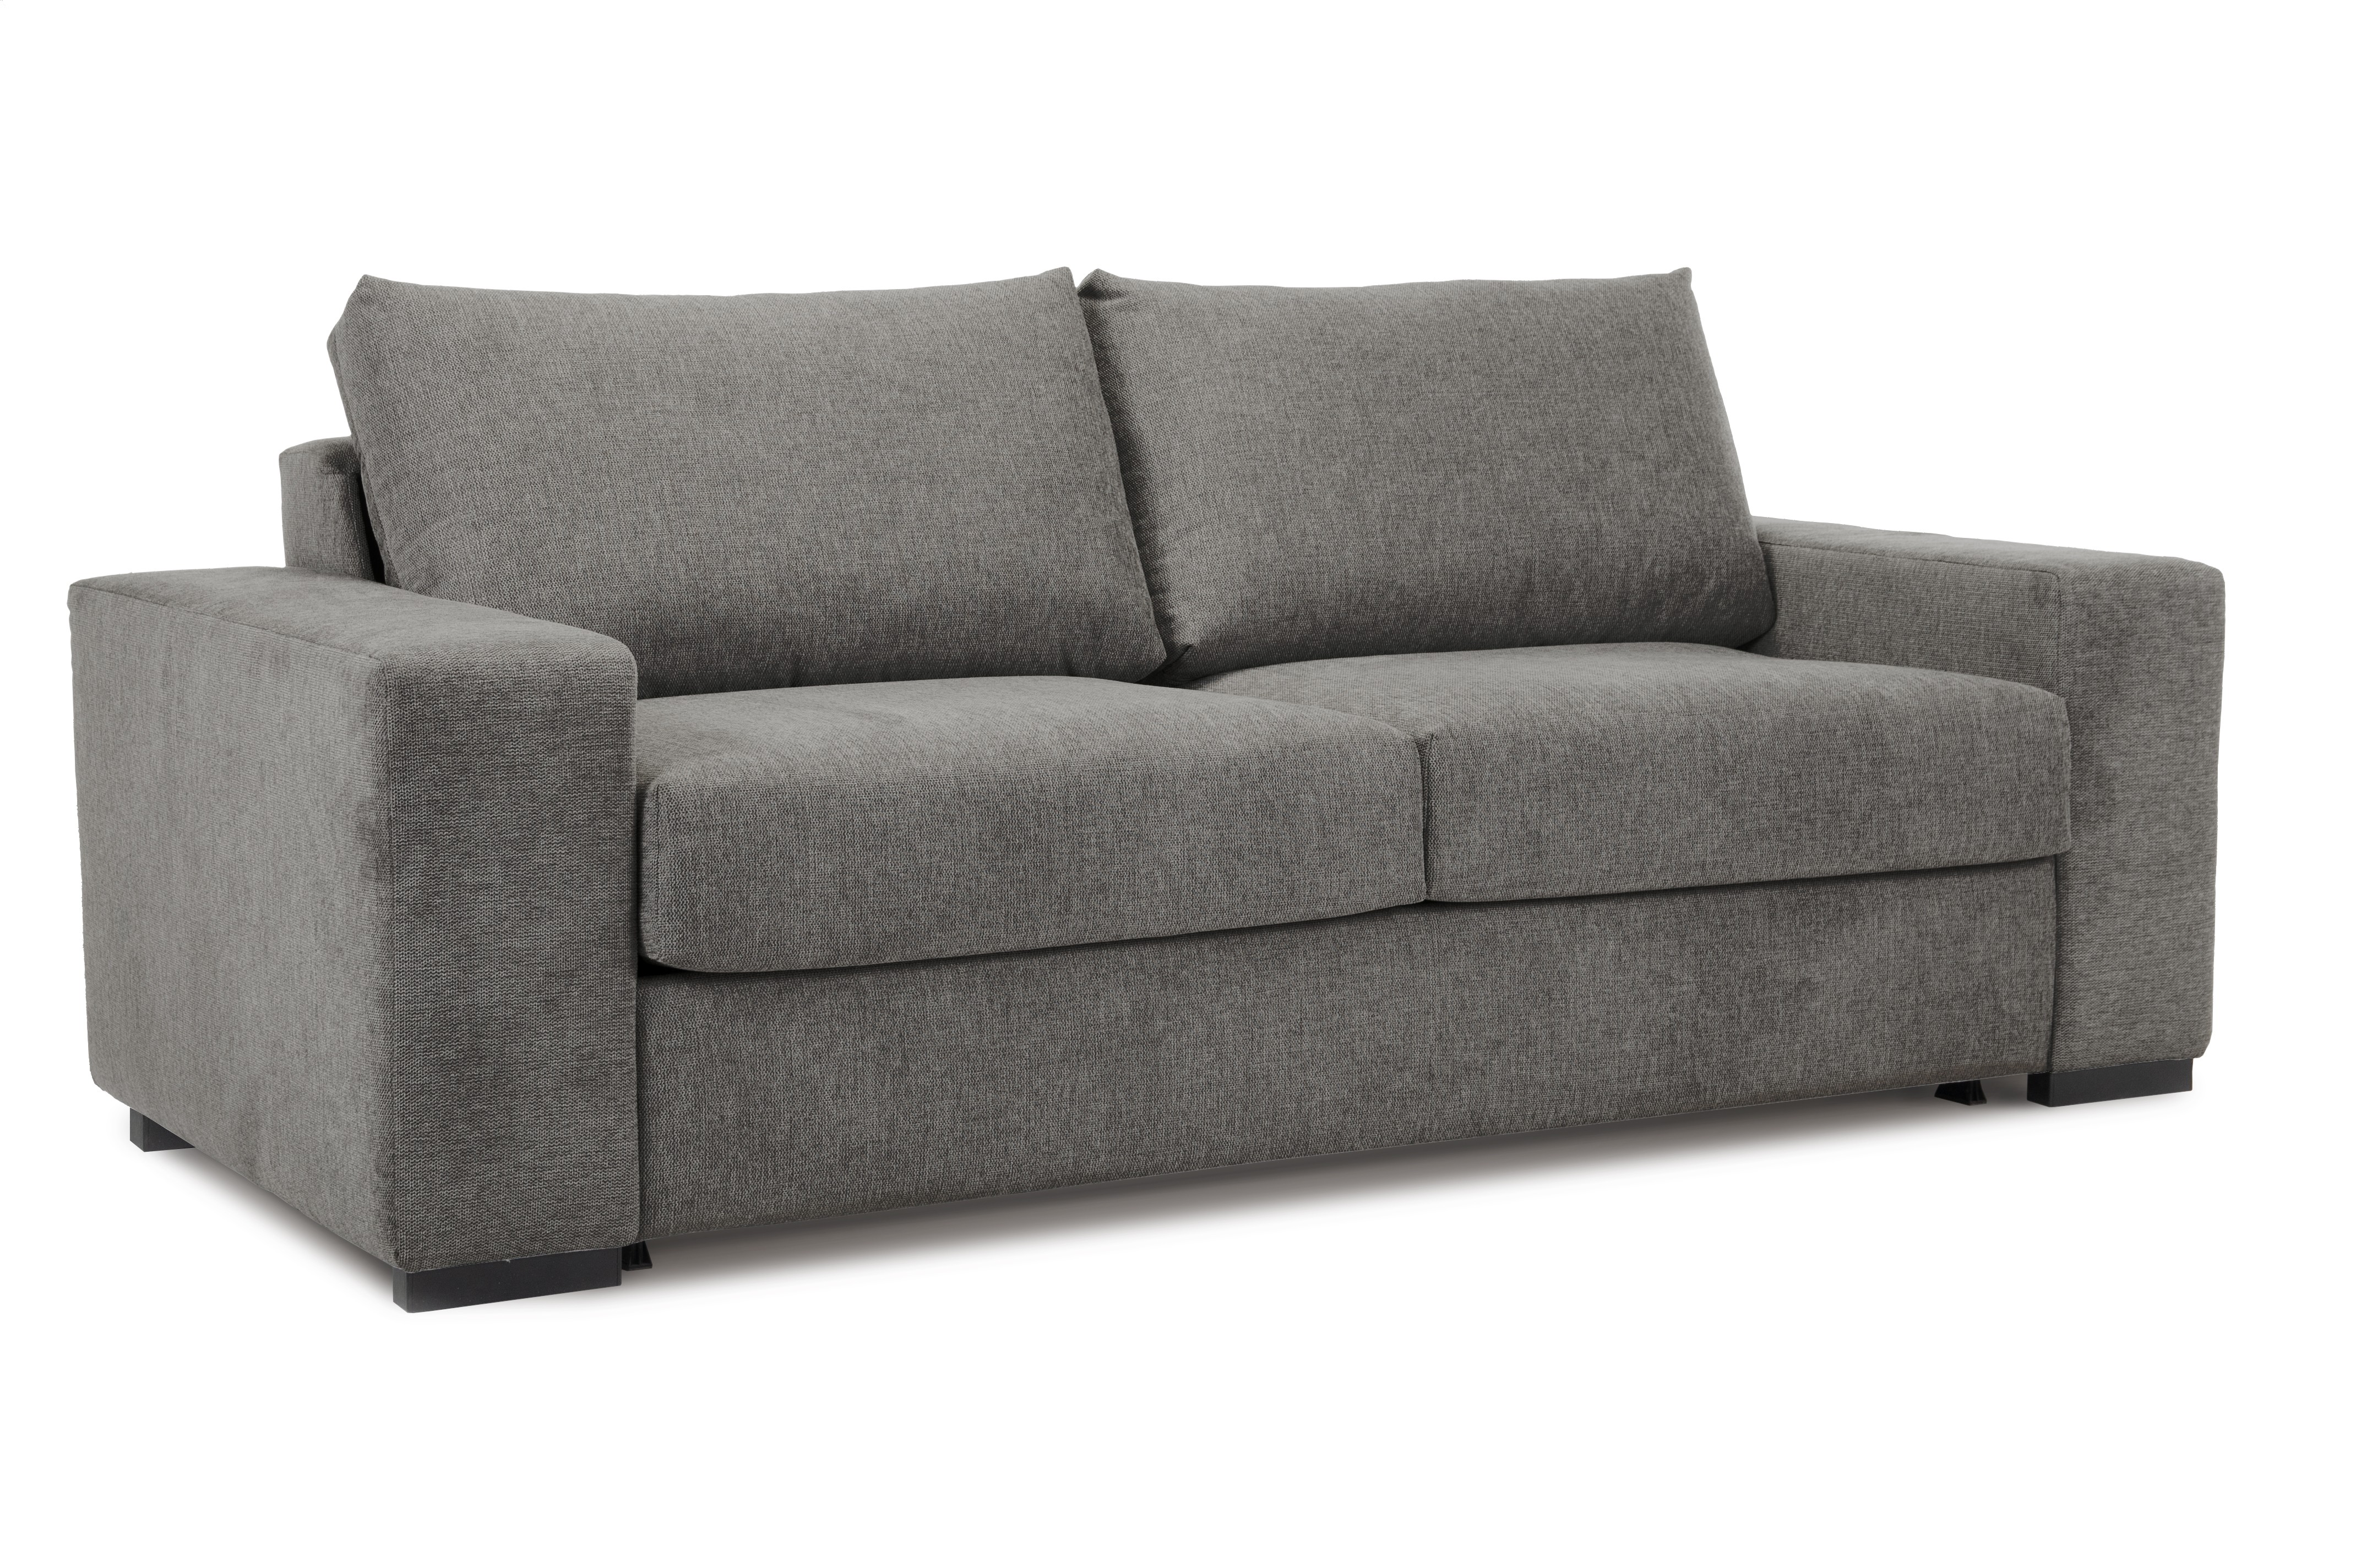 Sofa rozkładana Clasico taupe MEBLEX